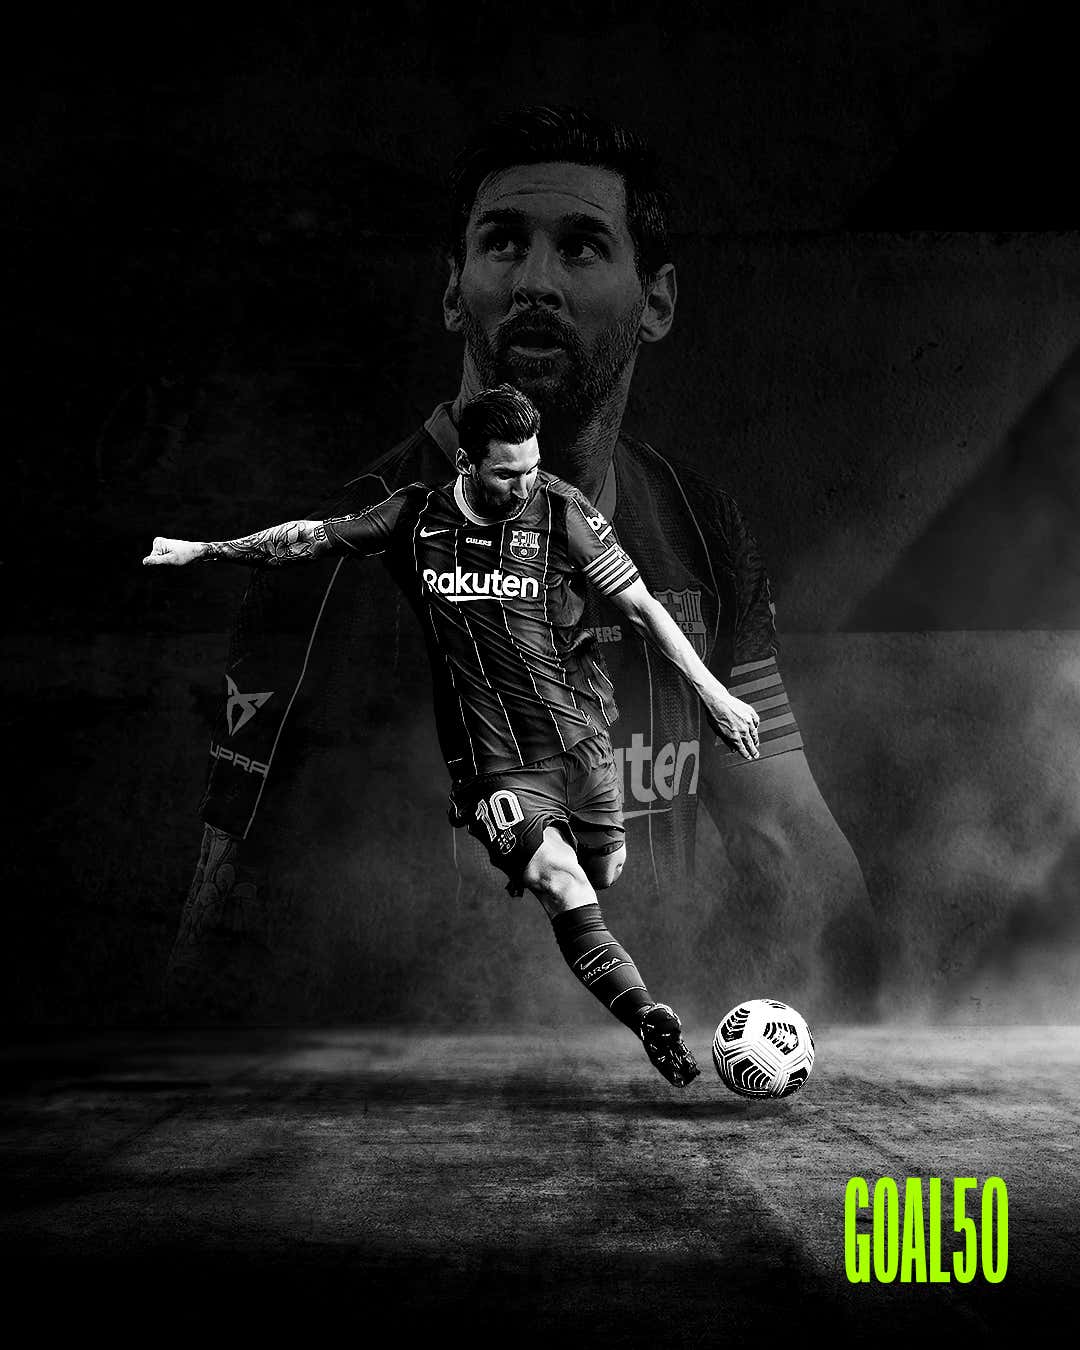 Lionel Messi Goal 50